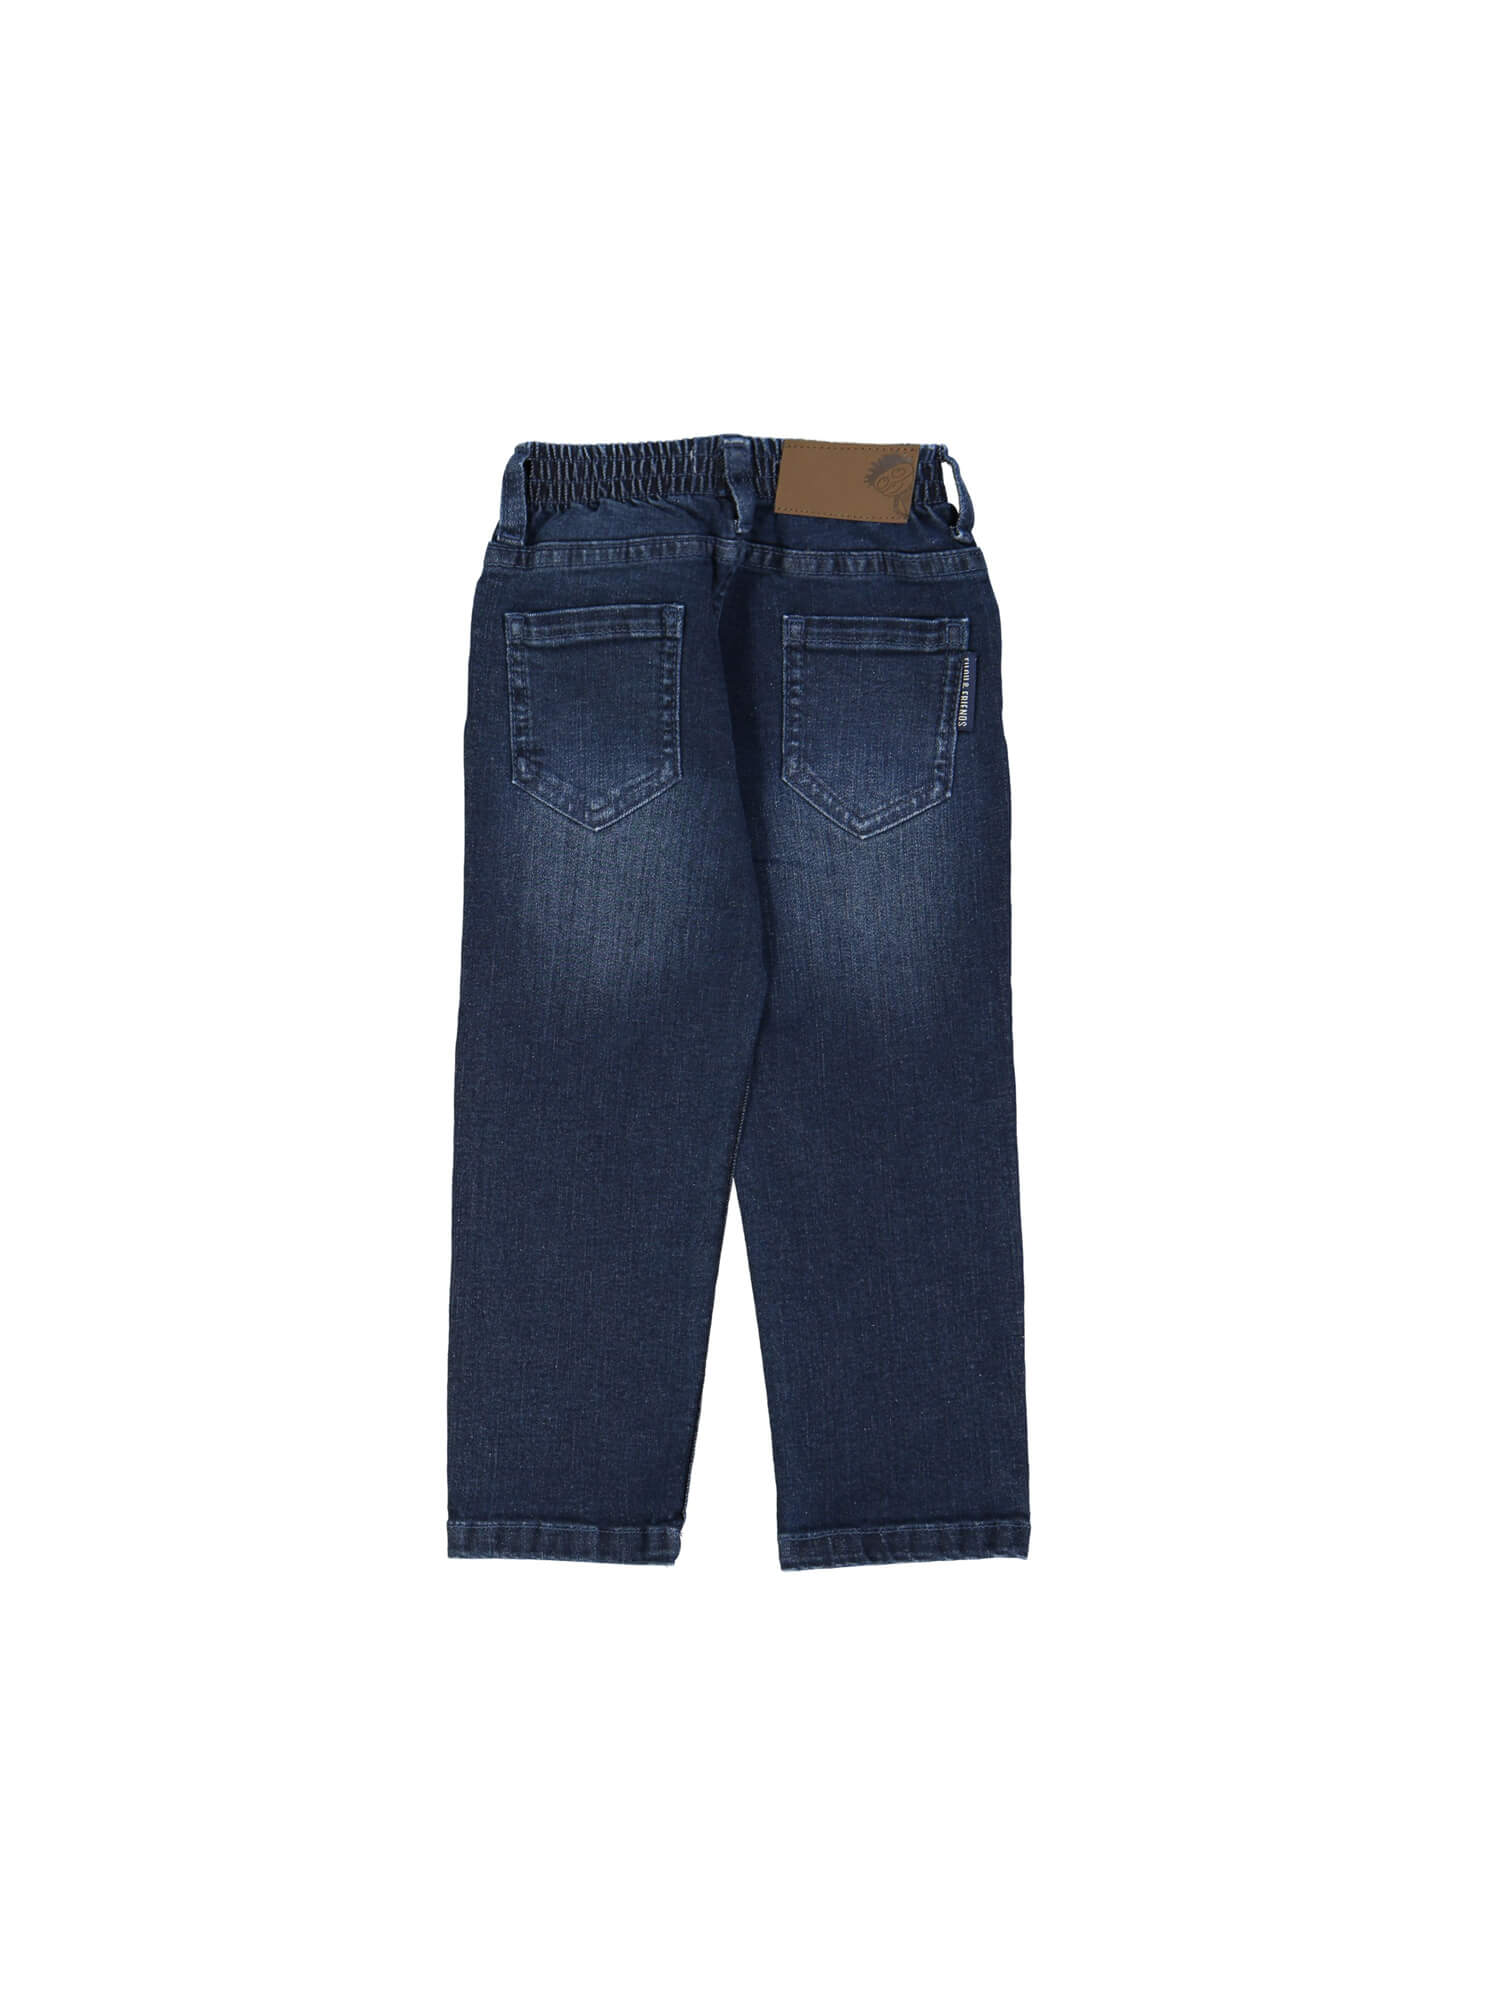 broek regular jeans blauw 06j